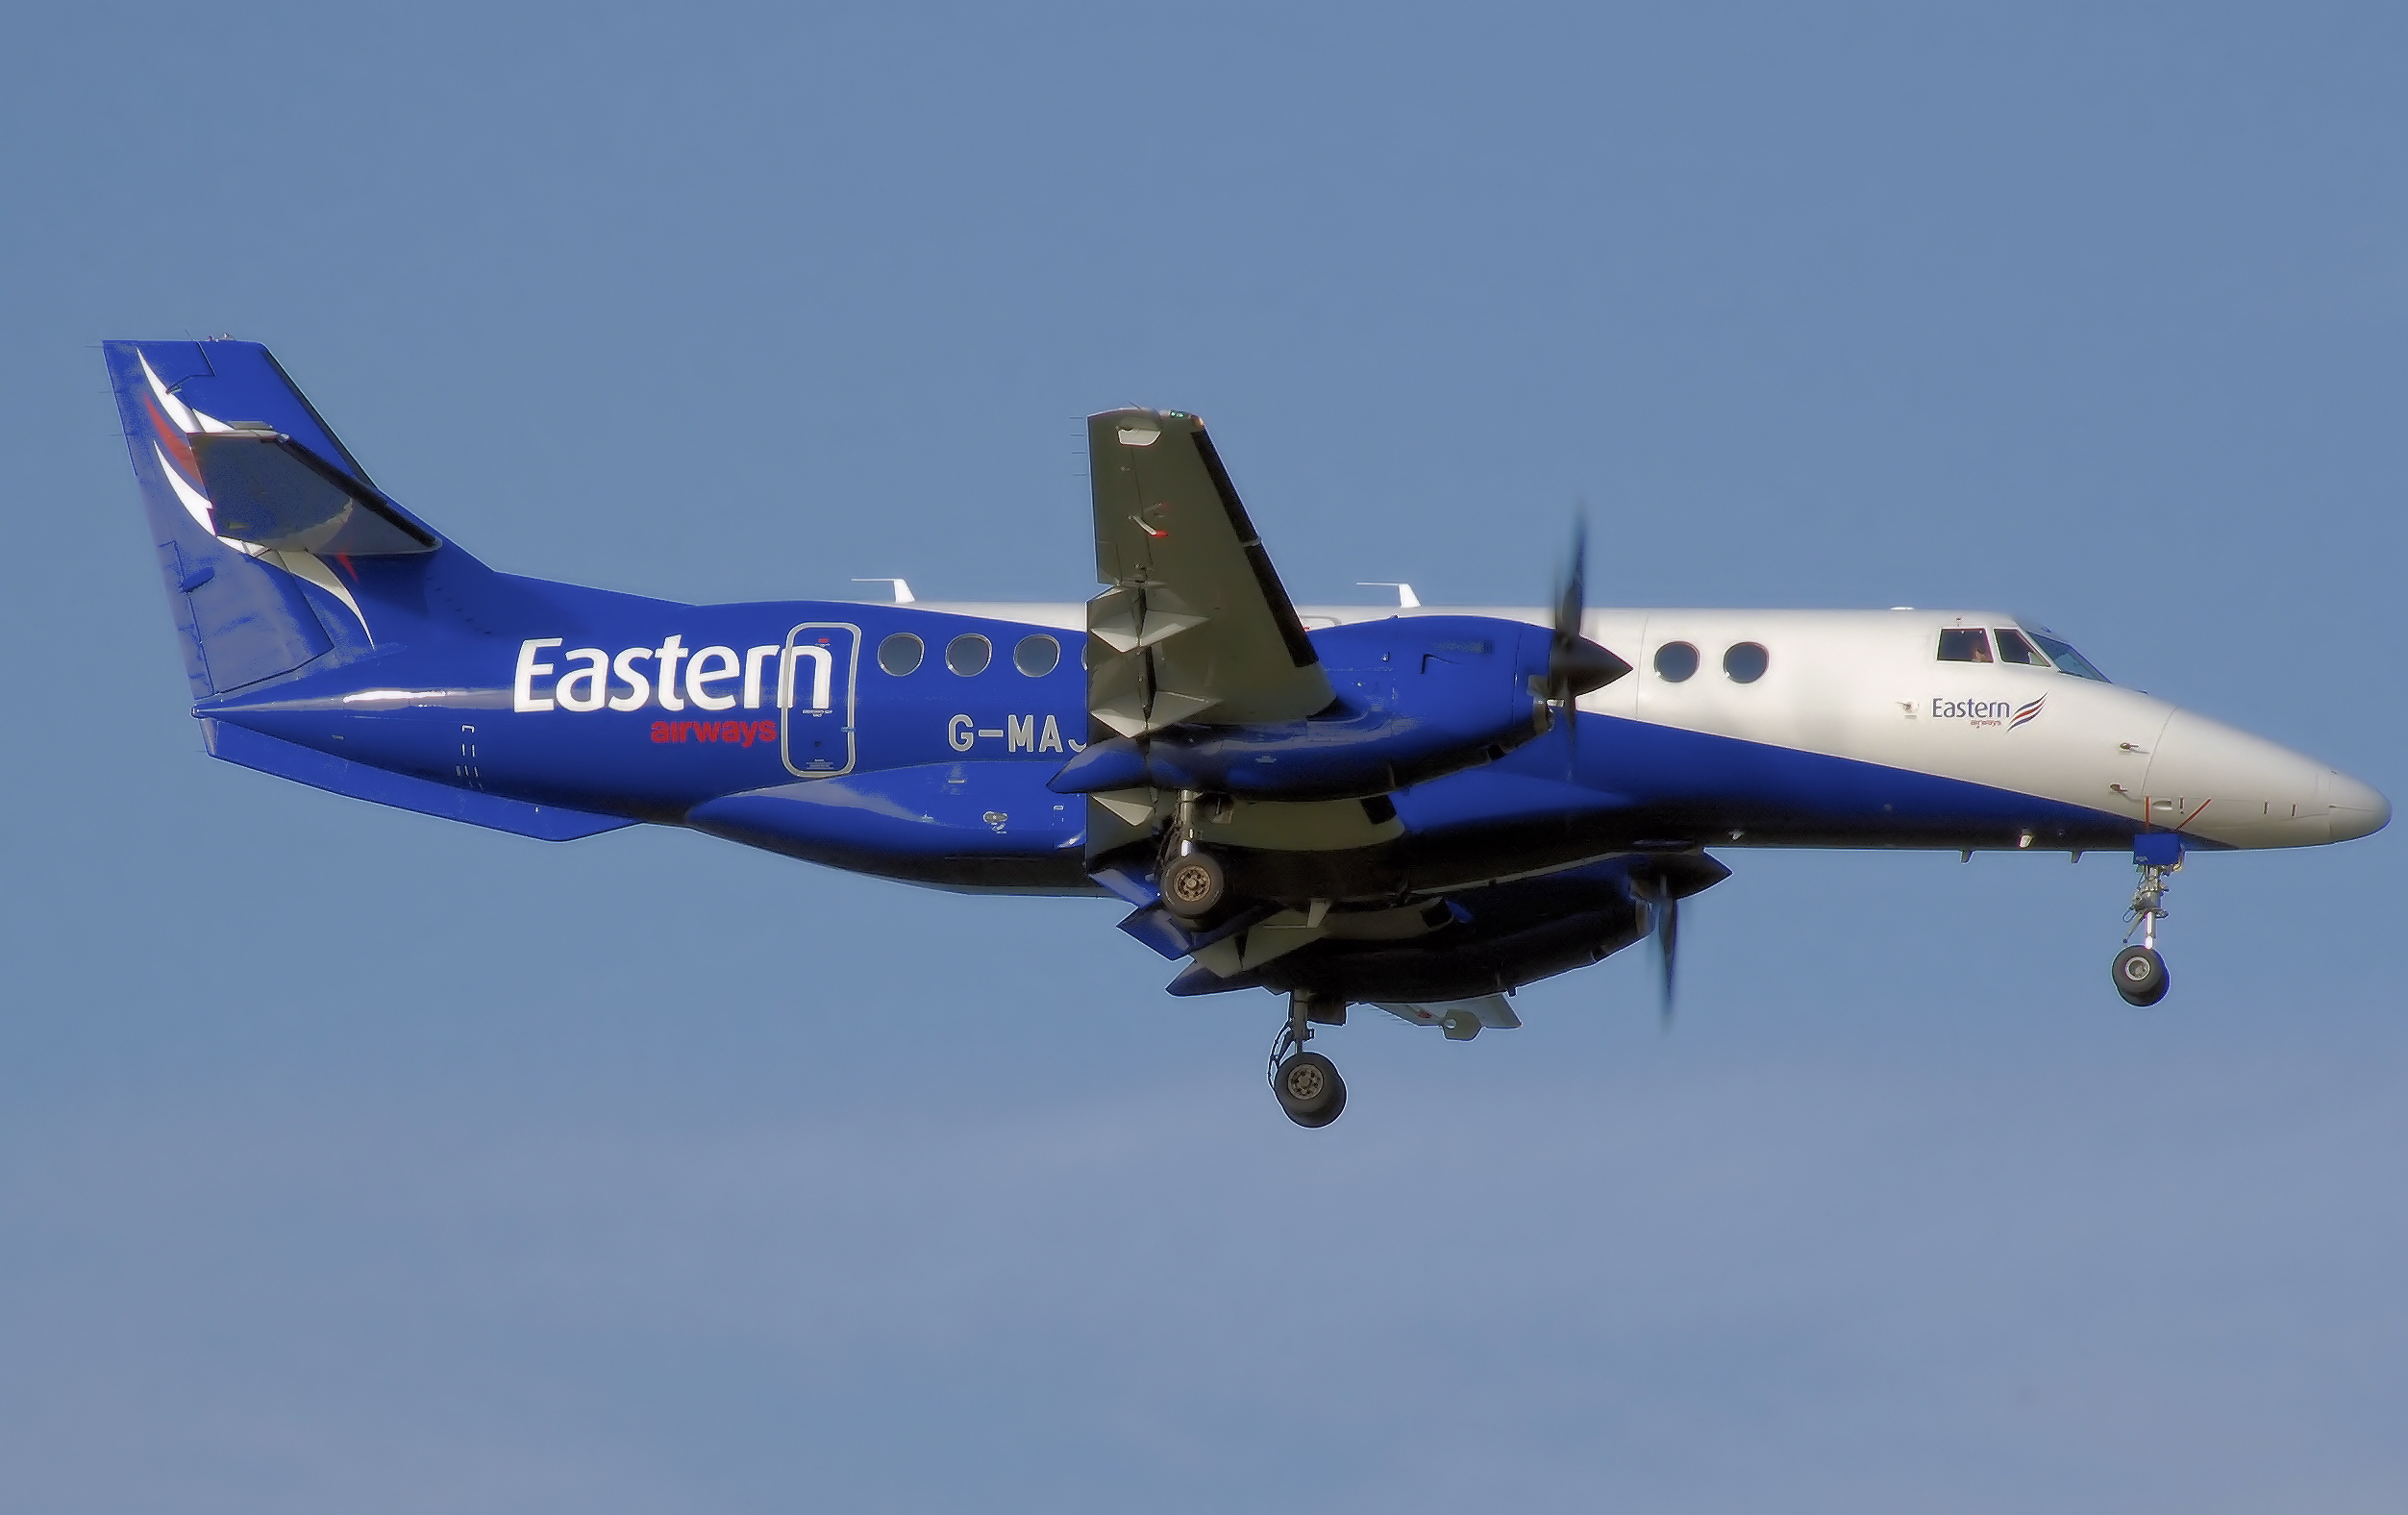 British Aerospace Jetstream 41 next